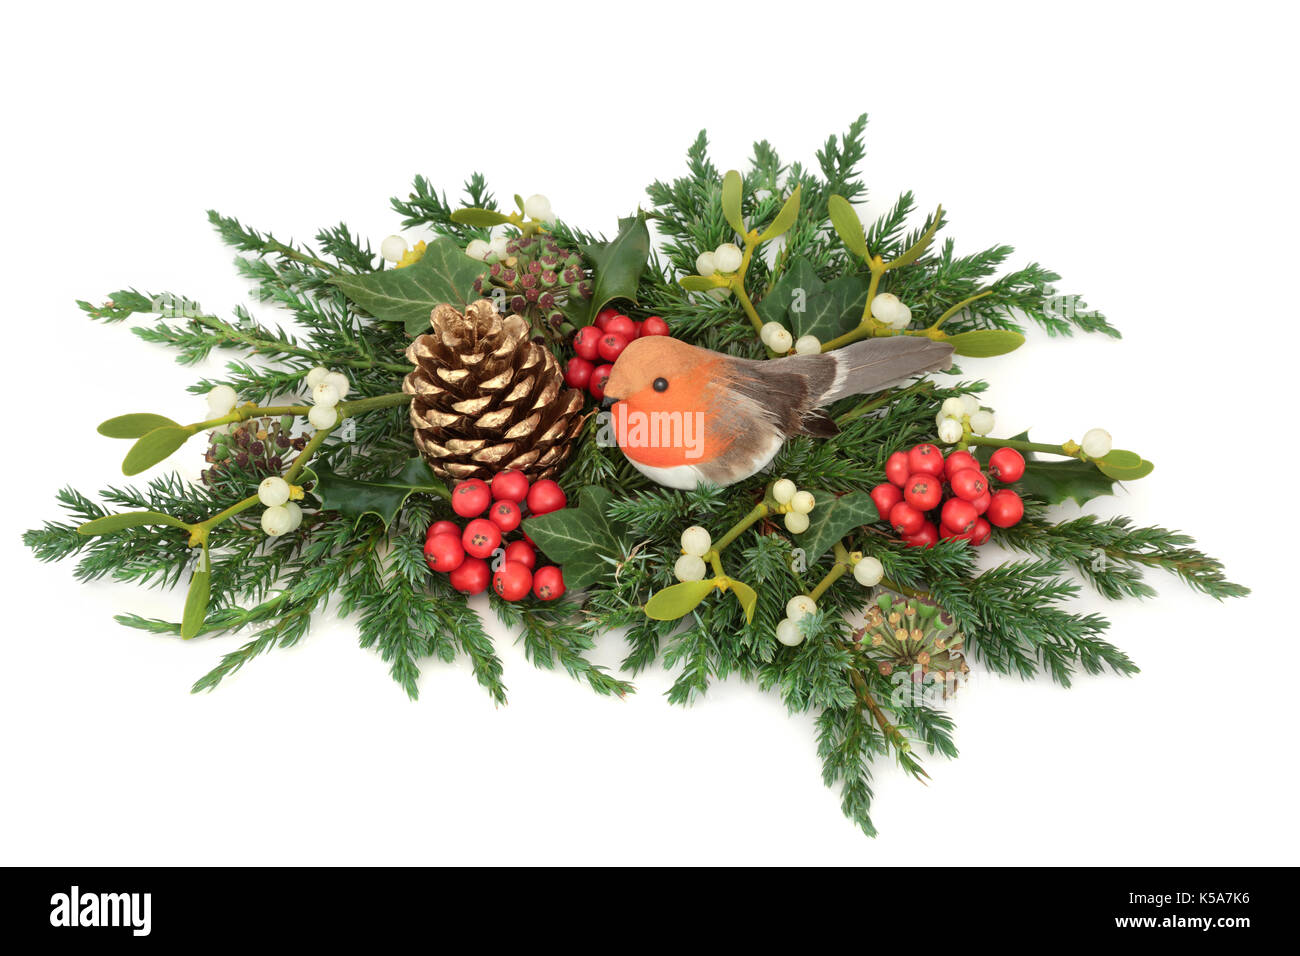 Weihnachten Anzeige mit Robin Dekoration, Holly, Pine Cone, Mistel, zeder Zypresse und Juniper blatt Zweige und Efeu auf weißem Hintergrund. Stockfoto